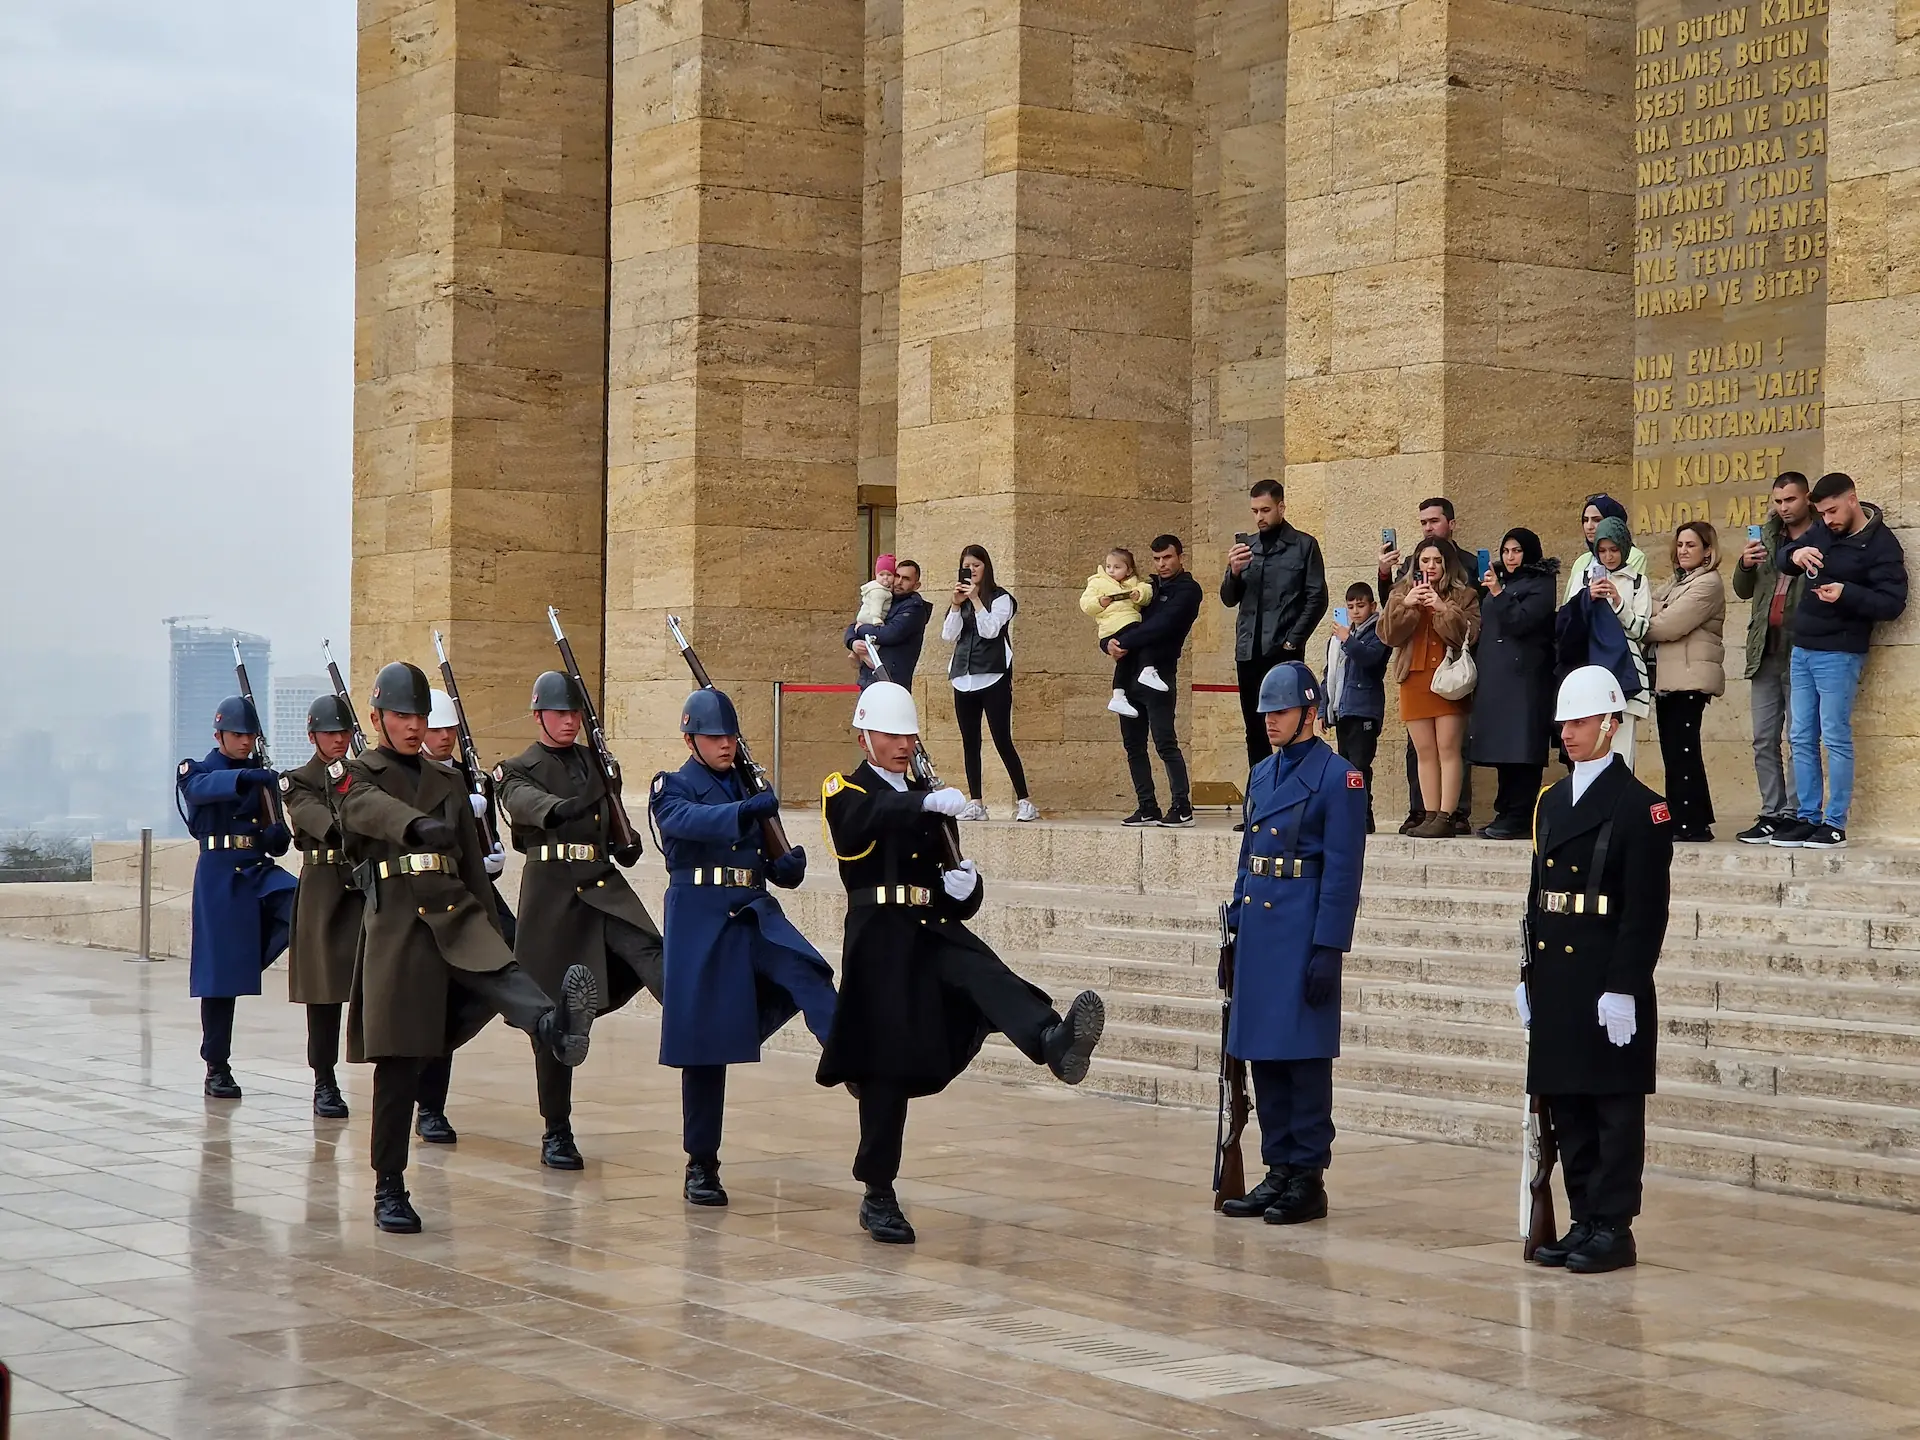 Une parade de neuf gardes passe devant le mausolée. Ils ont des habits militaires cérémonieux, des casques et un fusil chacun. En fond, les visiteurs les filment et les prennent en photo.